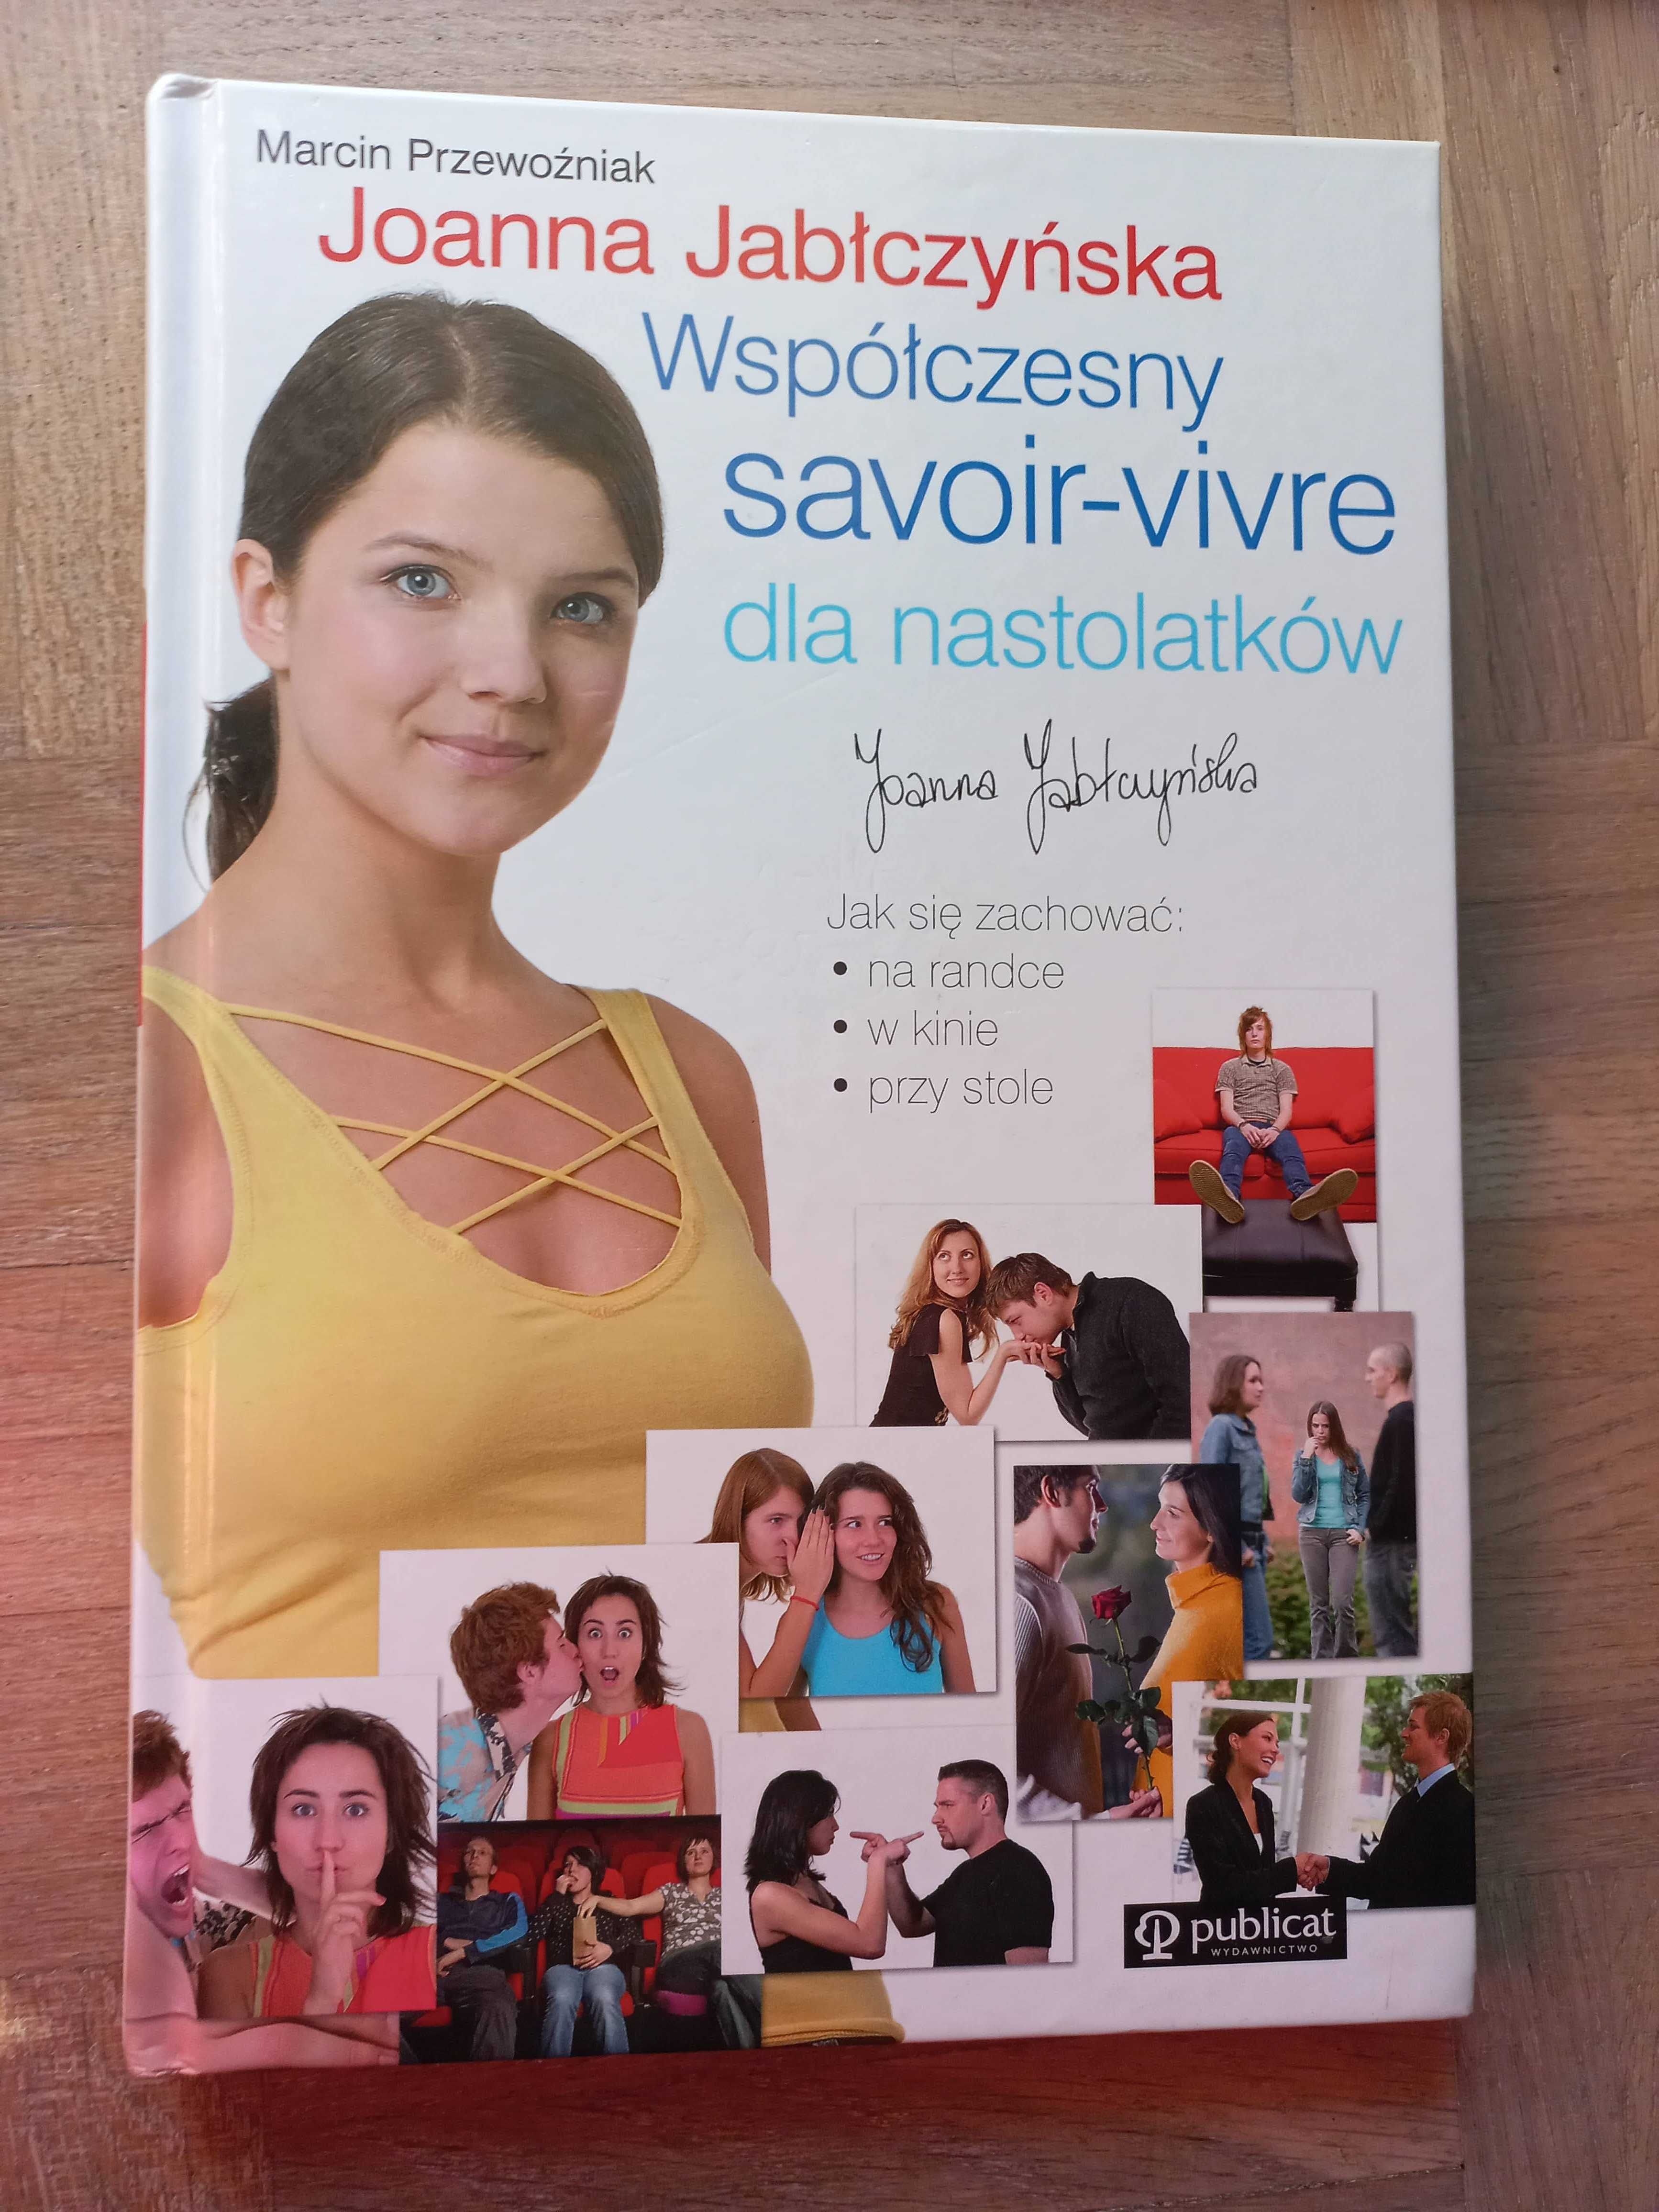 Współczesny savoir-vivre dla nastolatków Przewoźniak, Jabłczyńska